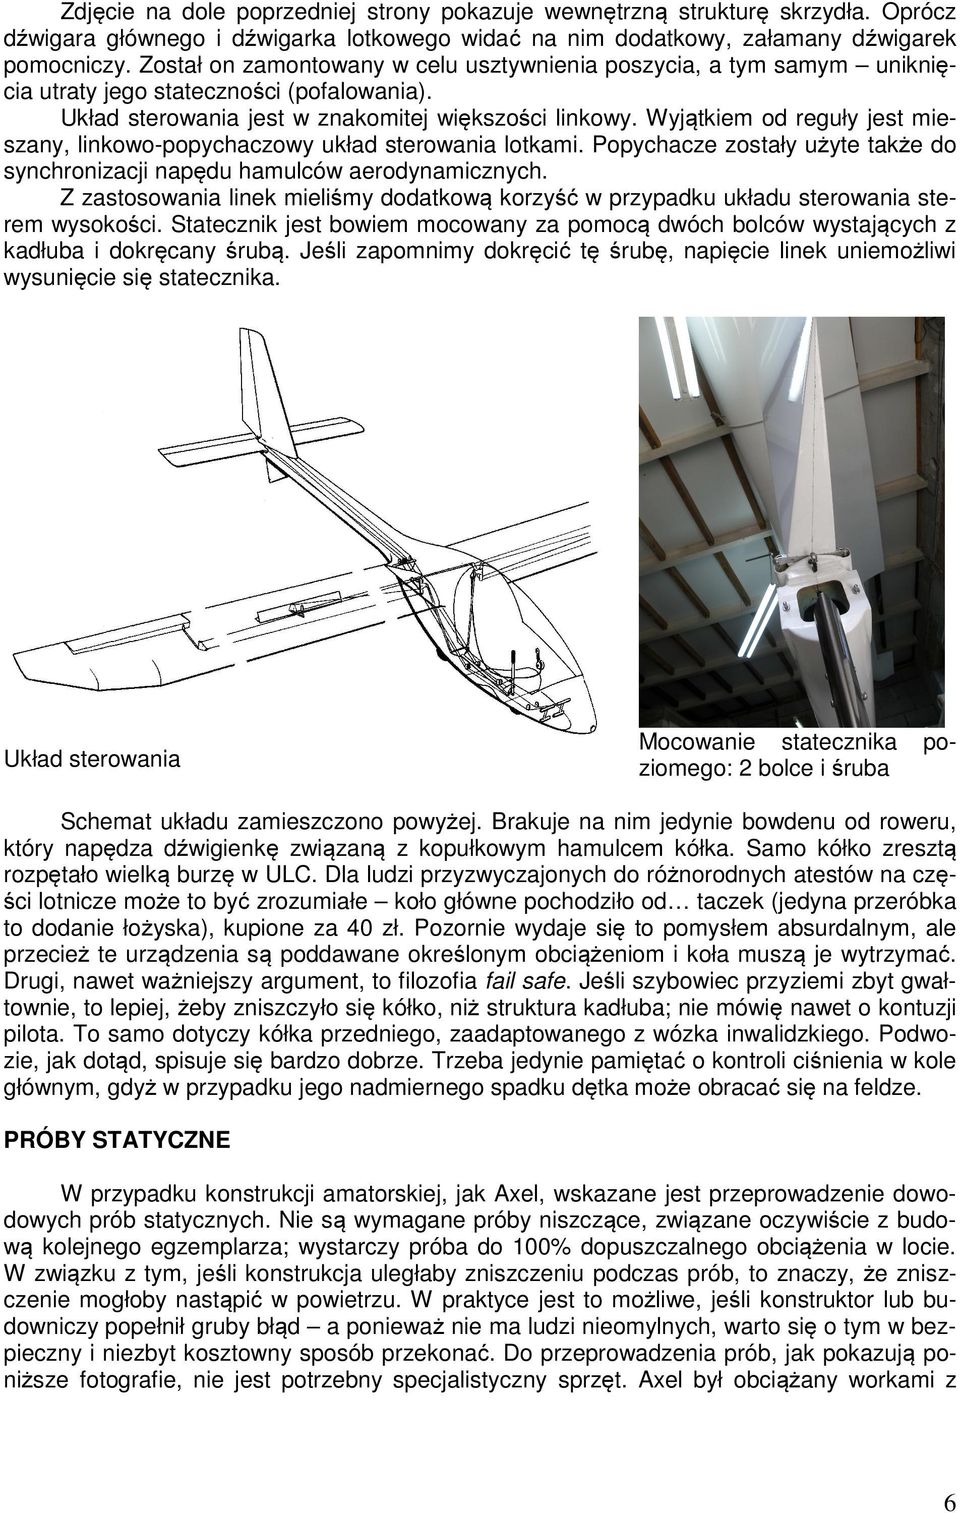 Wyjątkiem od reguły jest mieszany, linkowo-popychaczowy układ sterowania lotkami. Popychacze zostały użyte także do synchronizacji napędu hamulców aerodynamicznych.